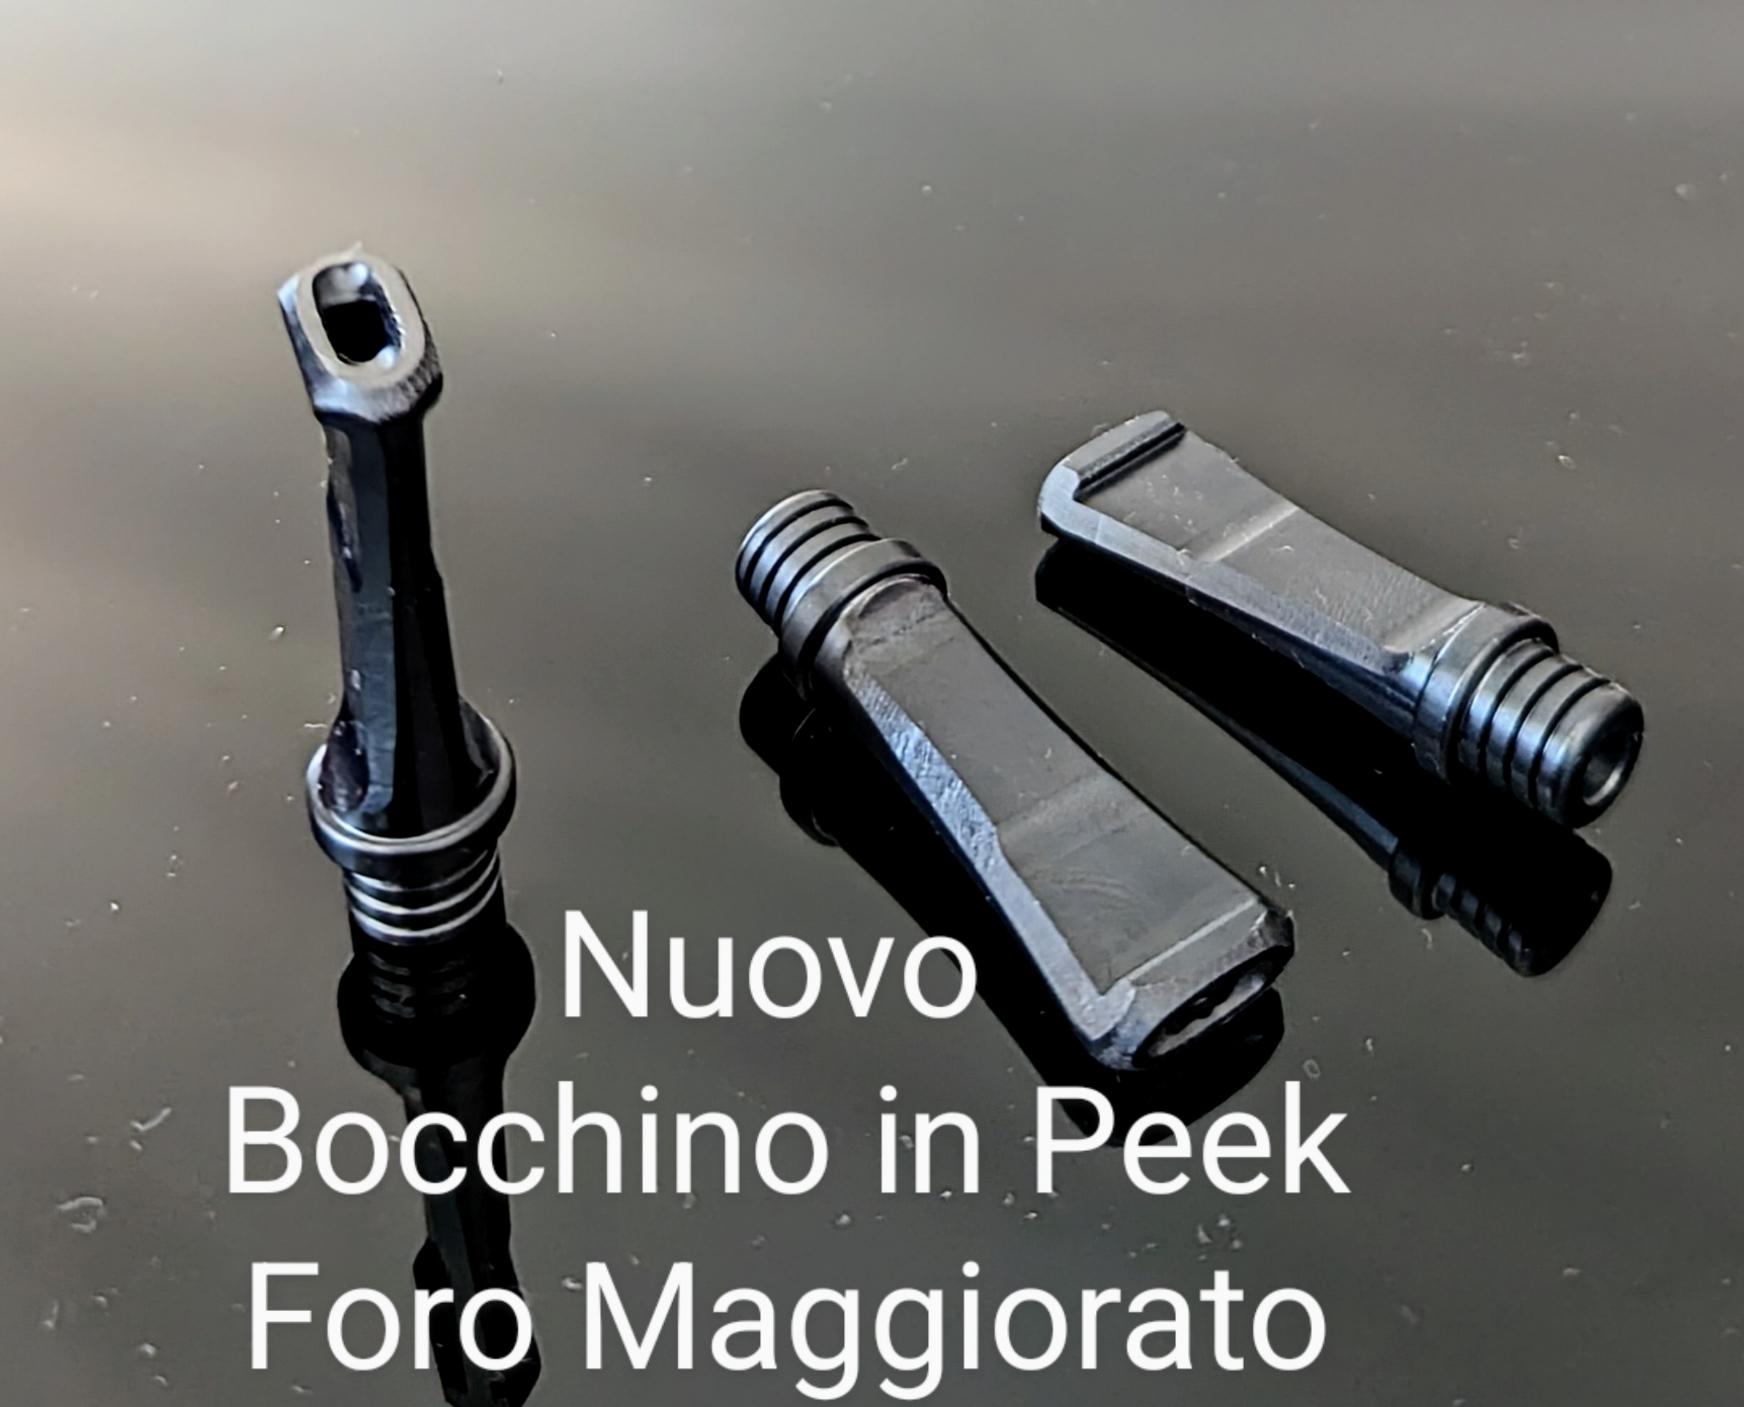 Extra Nuovo Black Bocchino per Job Pipe (New Mouthpiece)